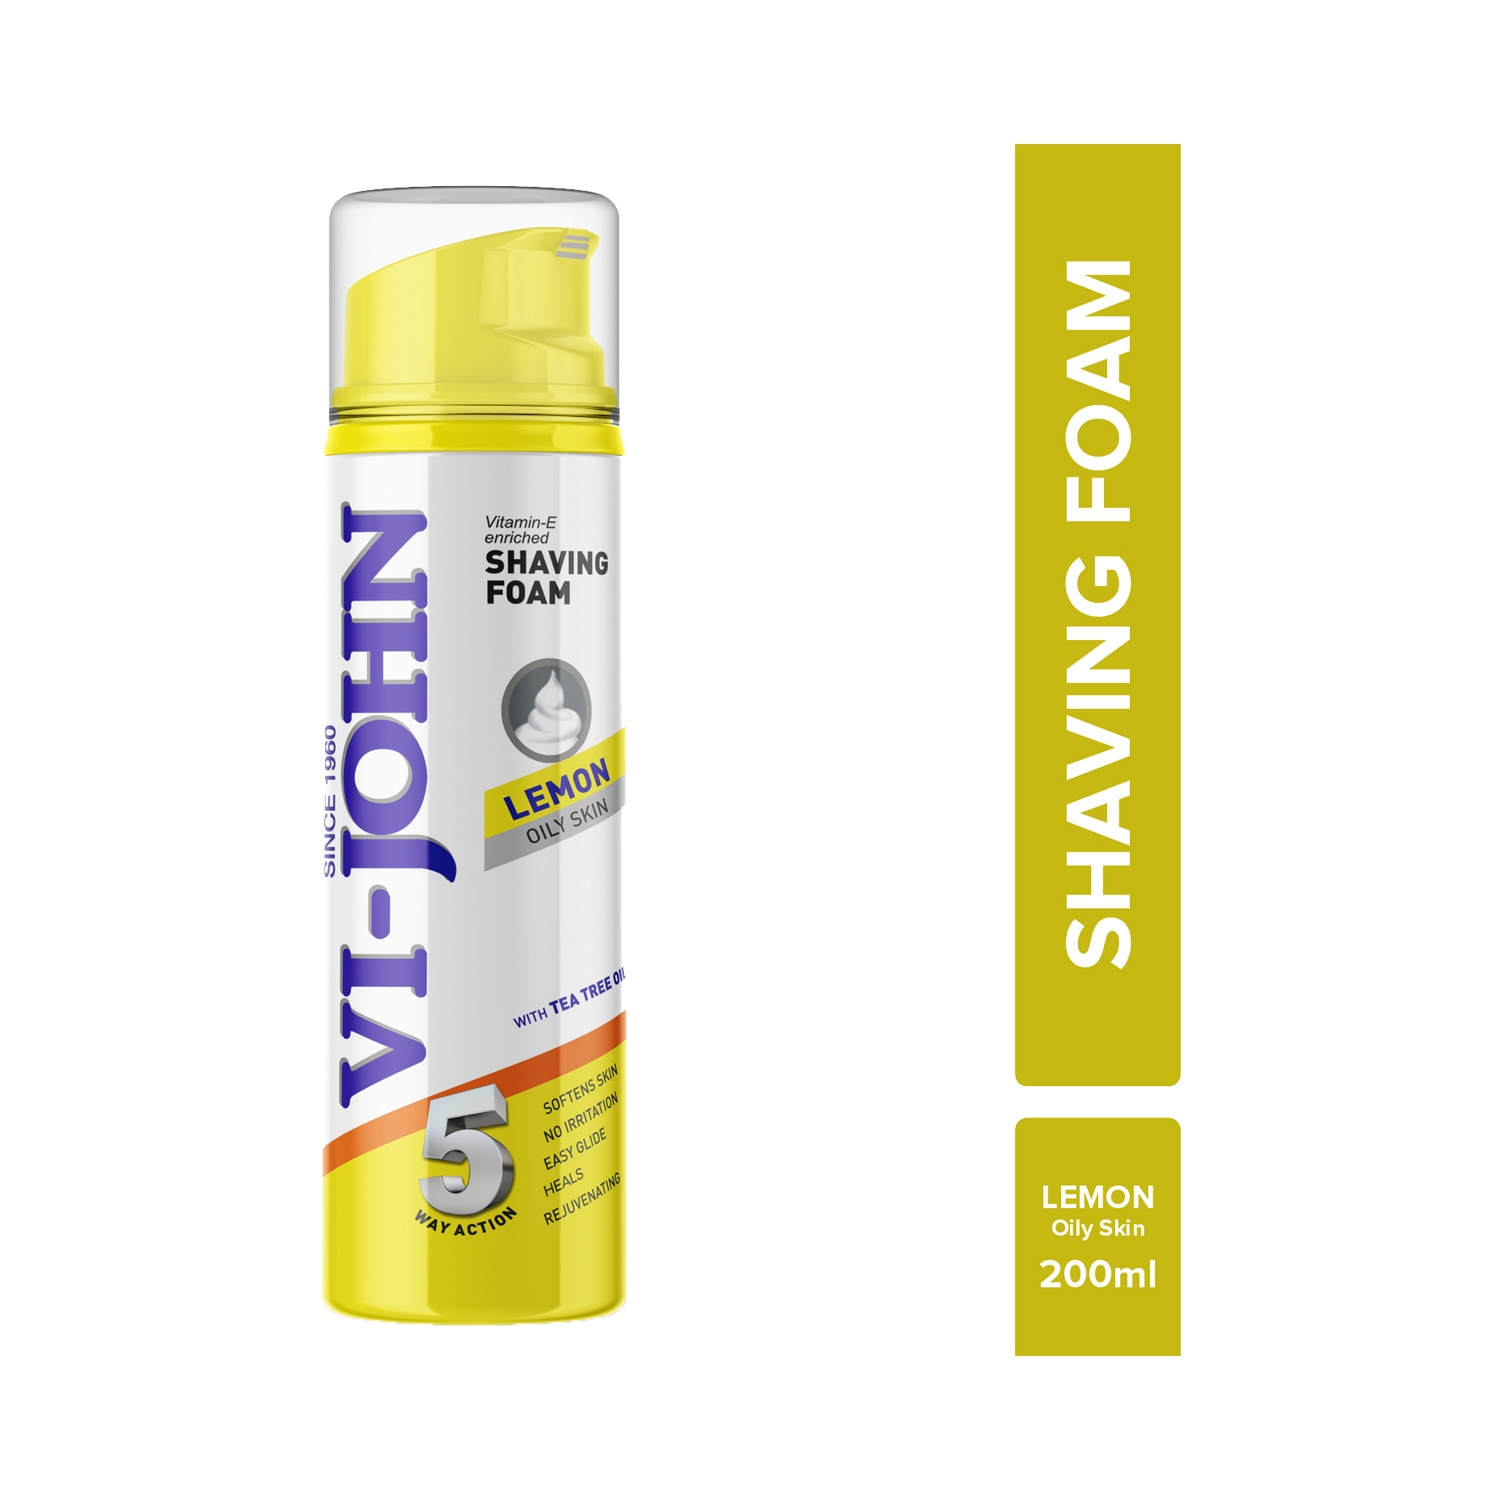 VI-JOHN | VI-JOHN Lemon 5 Way Action Shaving Foam Enriched Vitamin E For Oily Skin (200ml)